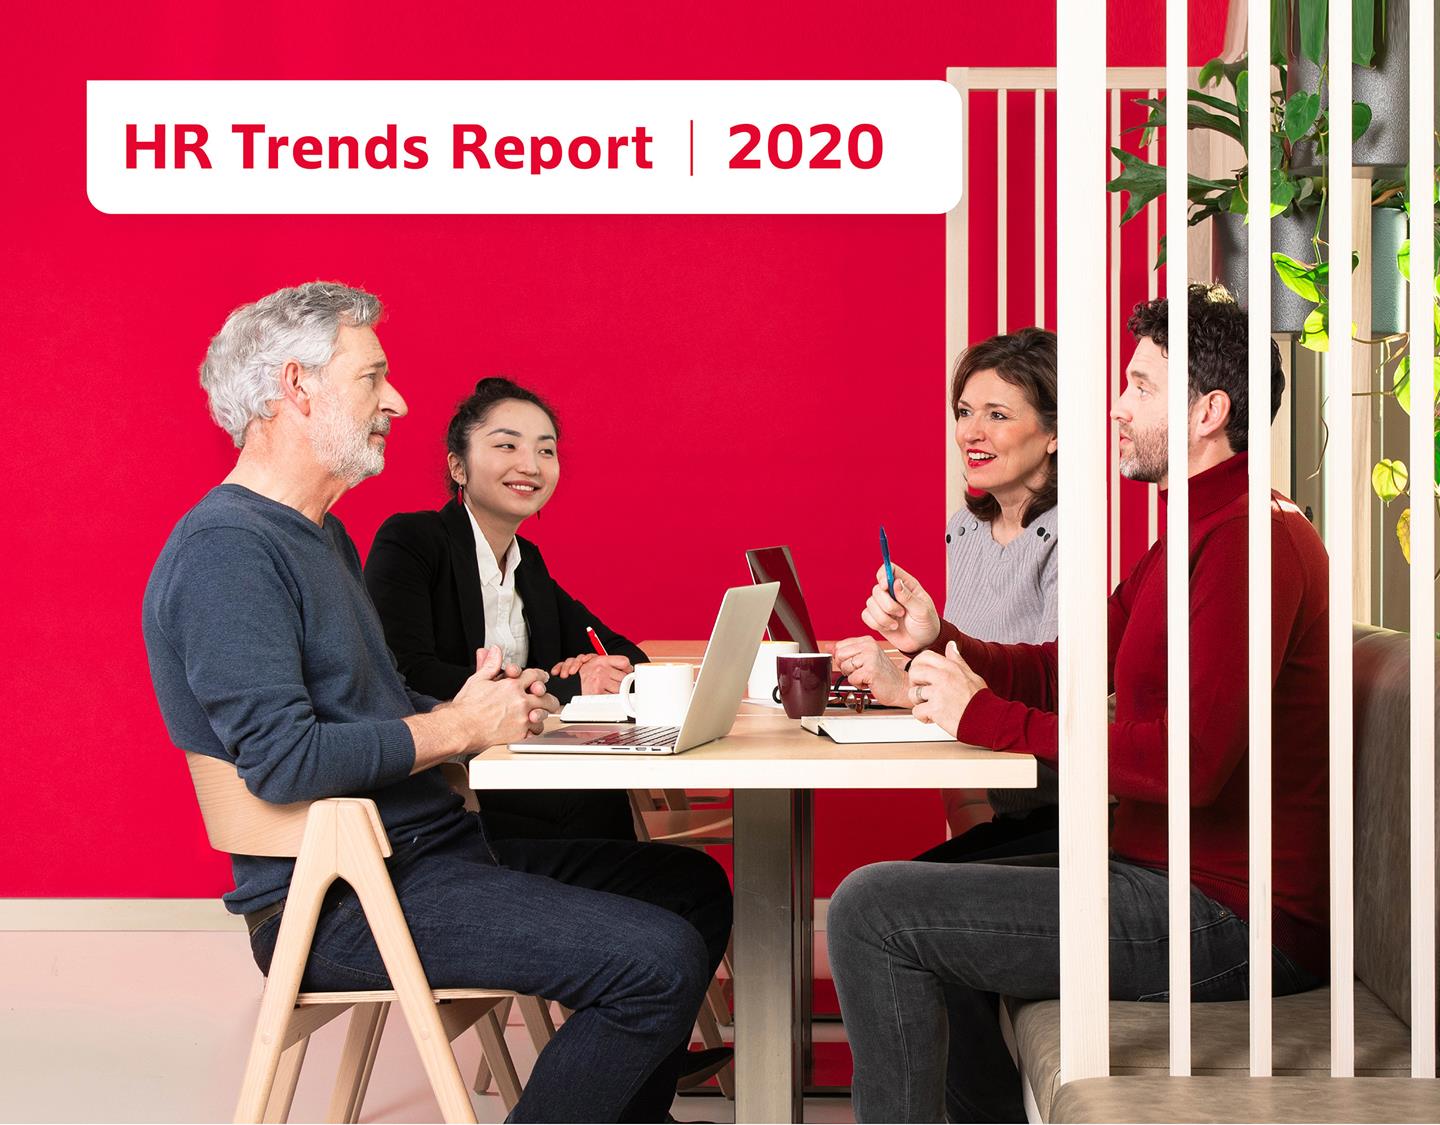 HR Trends Report 2020